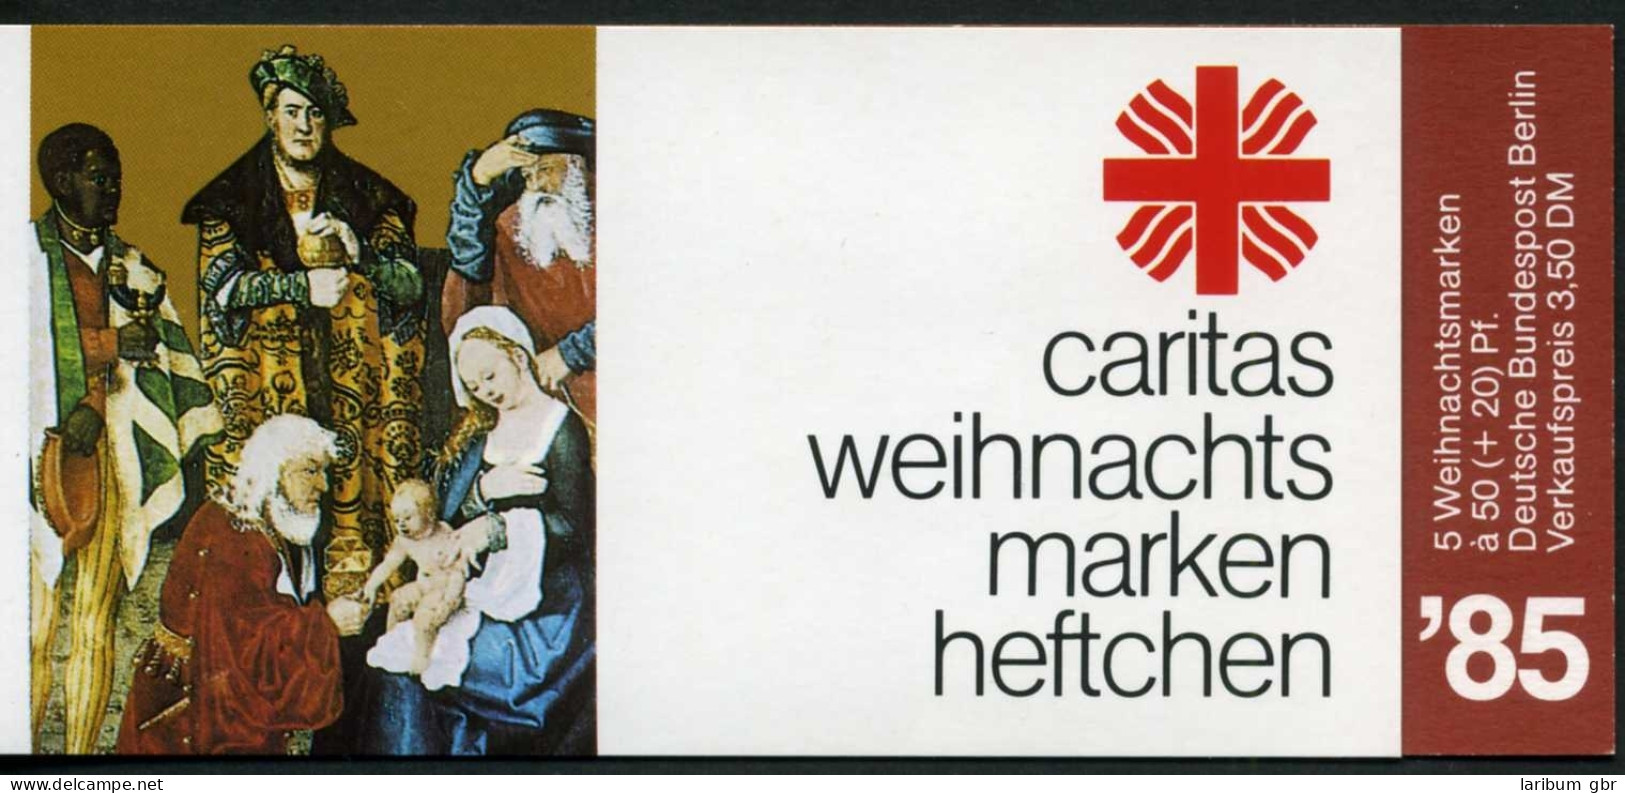 Berlin Caritas Markenheftchen 1985 749 Postfrisch #IS708 - Markenheftchen